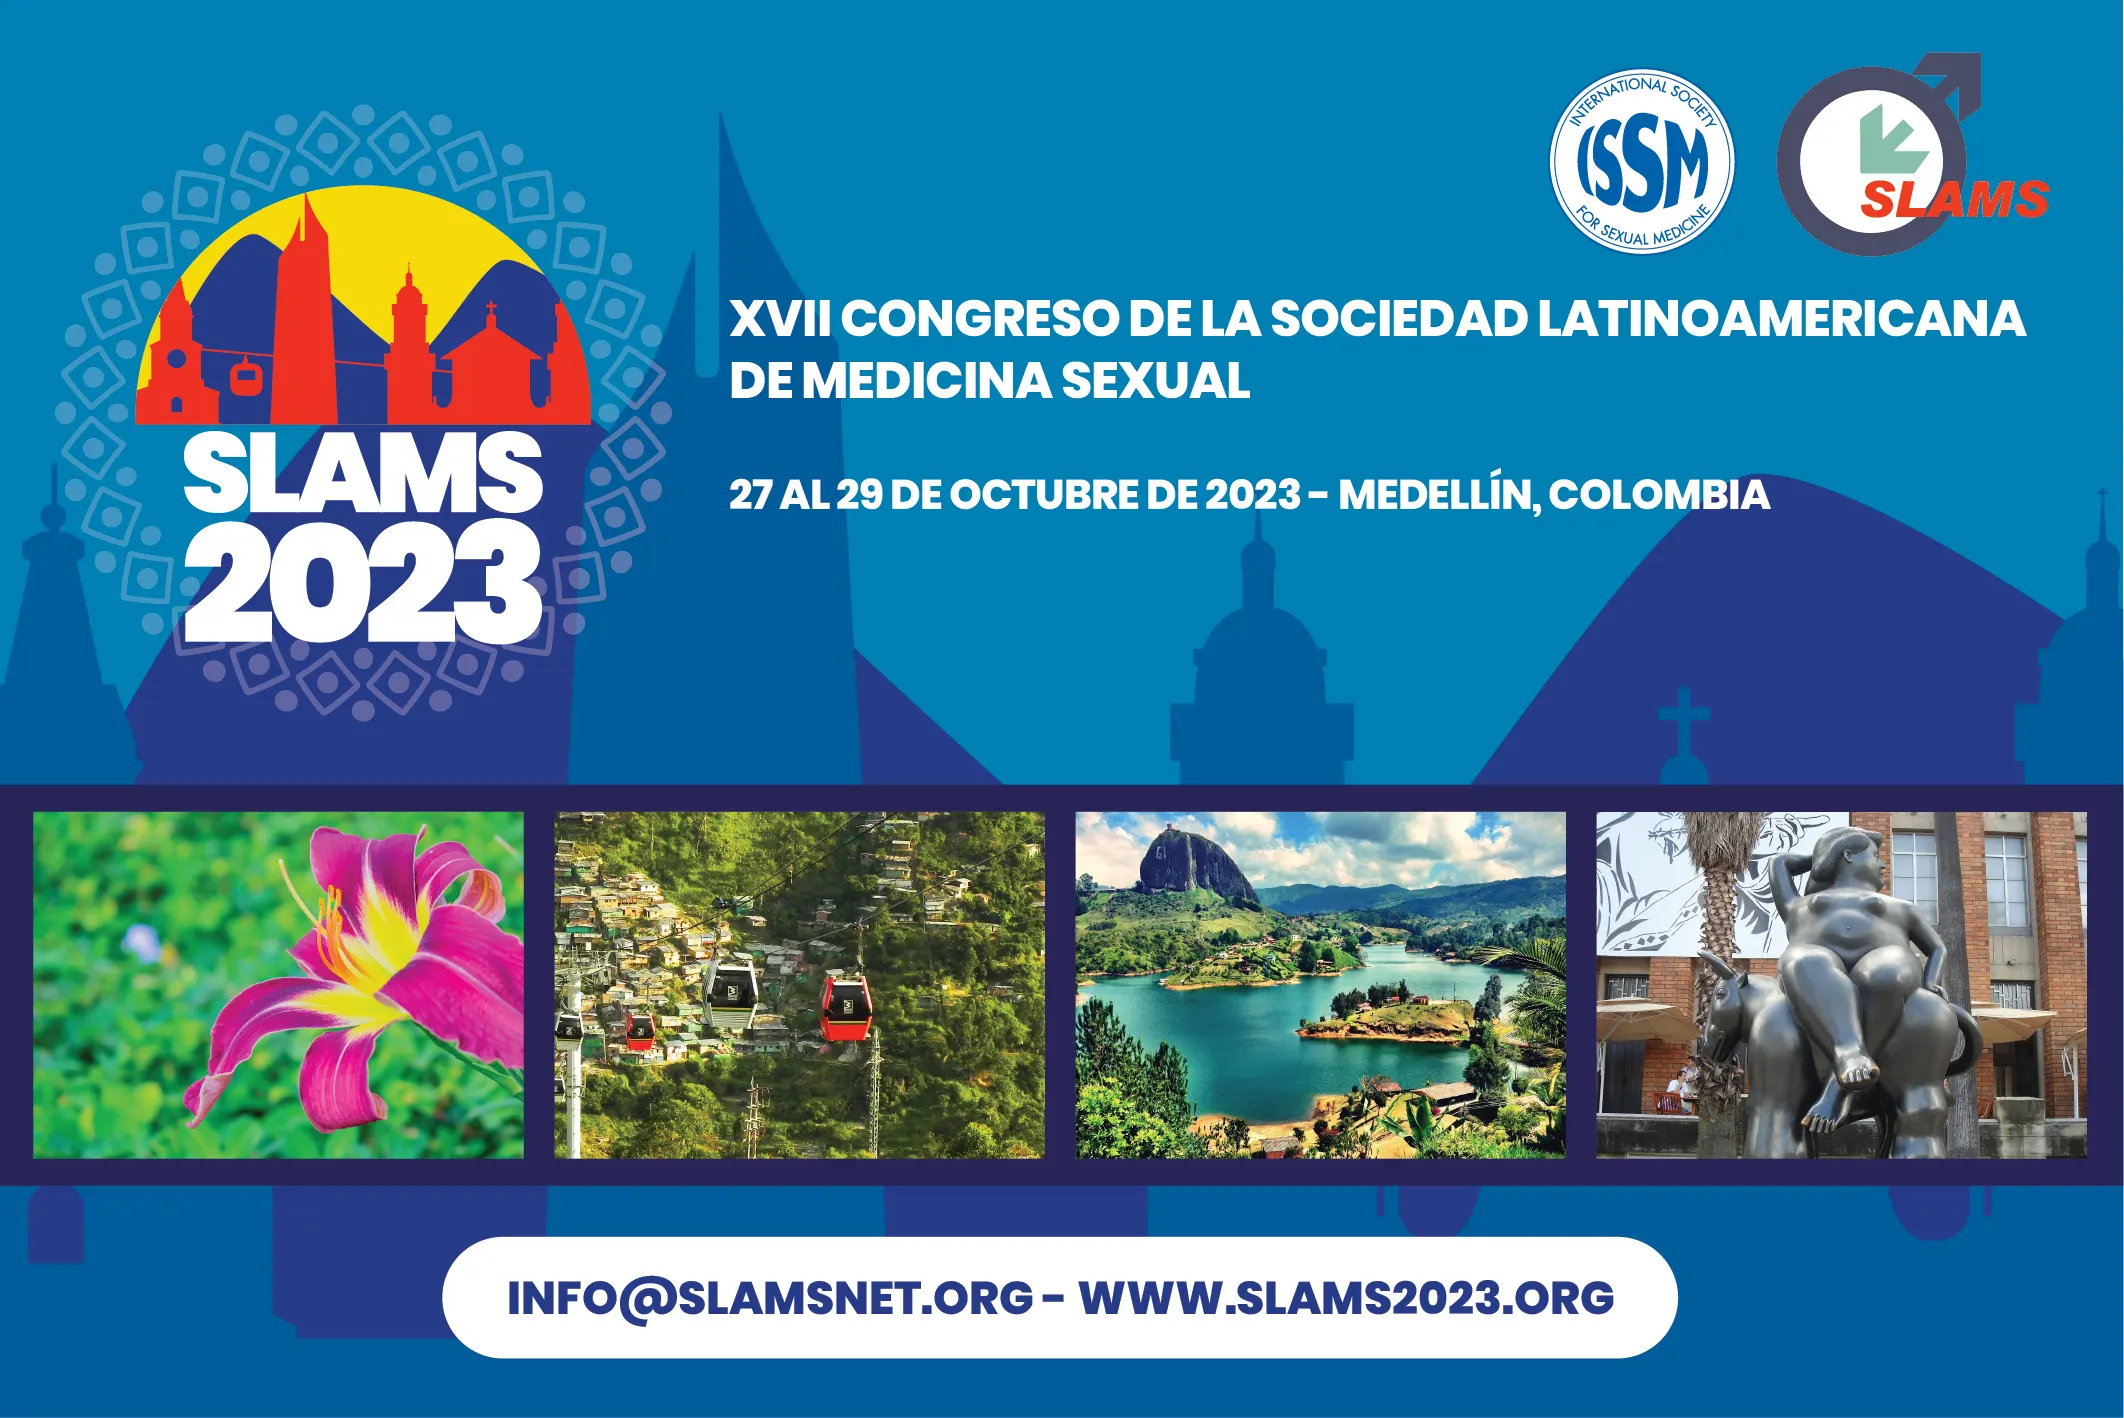 XVII Congreso de la Sociedad Latinoamericana de Medicina Sexual. 27 al 29 de octubre de 2023. Medellín, Colombia.